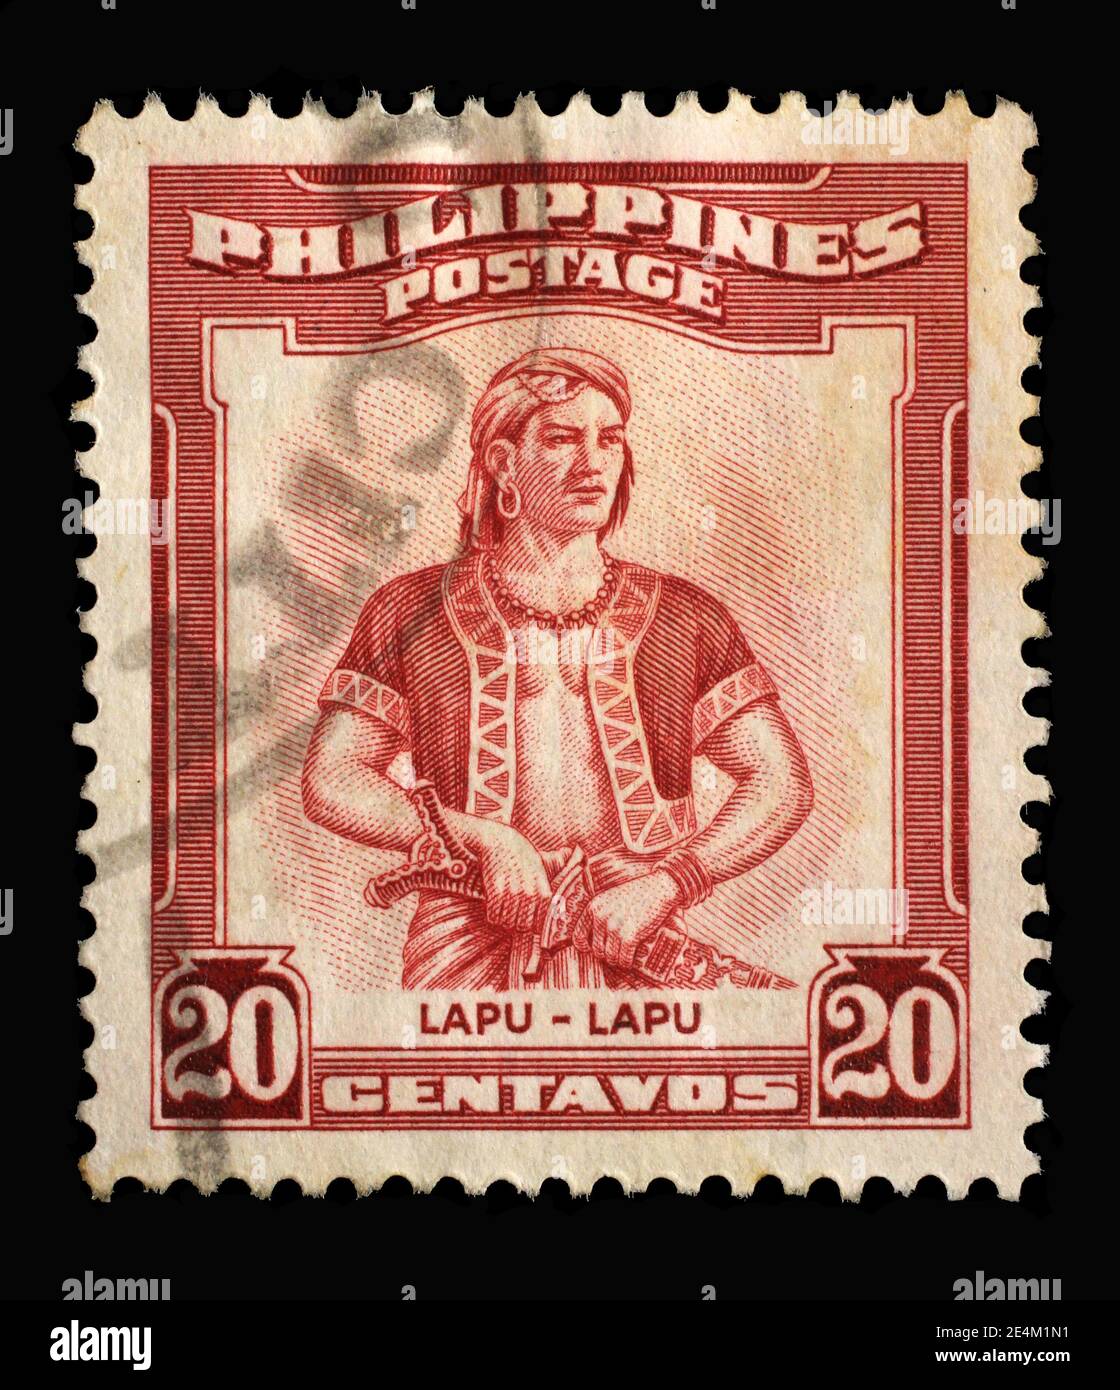 Timbre imprimé aux Philippines montre le portrait de Lapu-Lapu (1491-1542) était le datu de Mactan, une île dans les Visayas, vers 1955 Banque D'Images